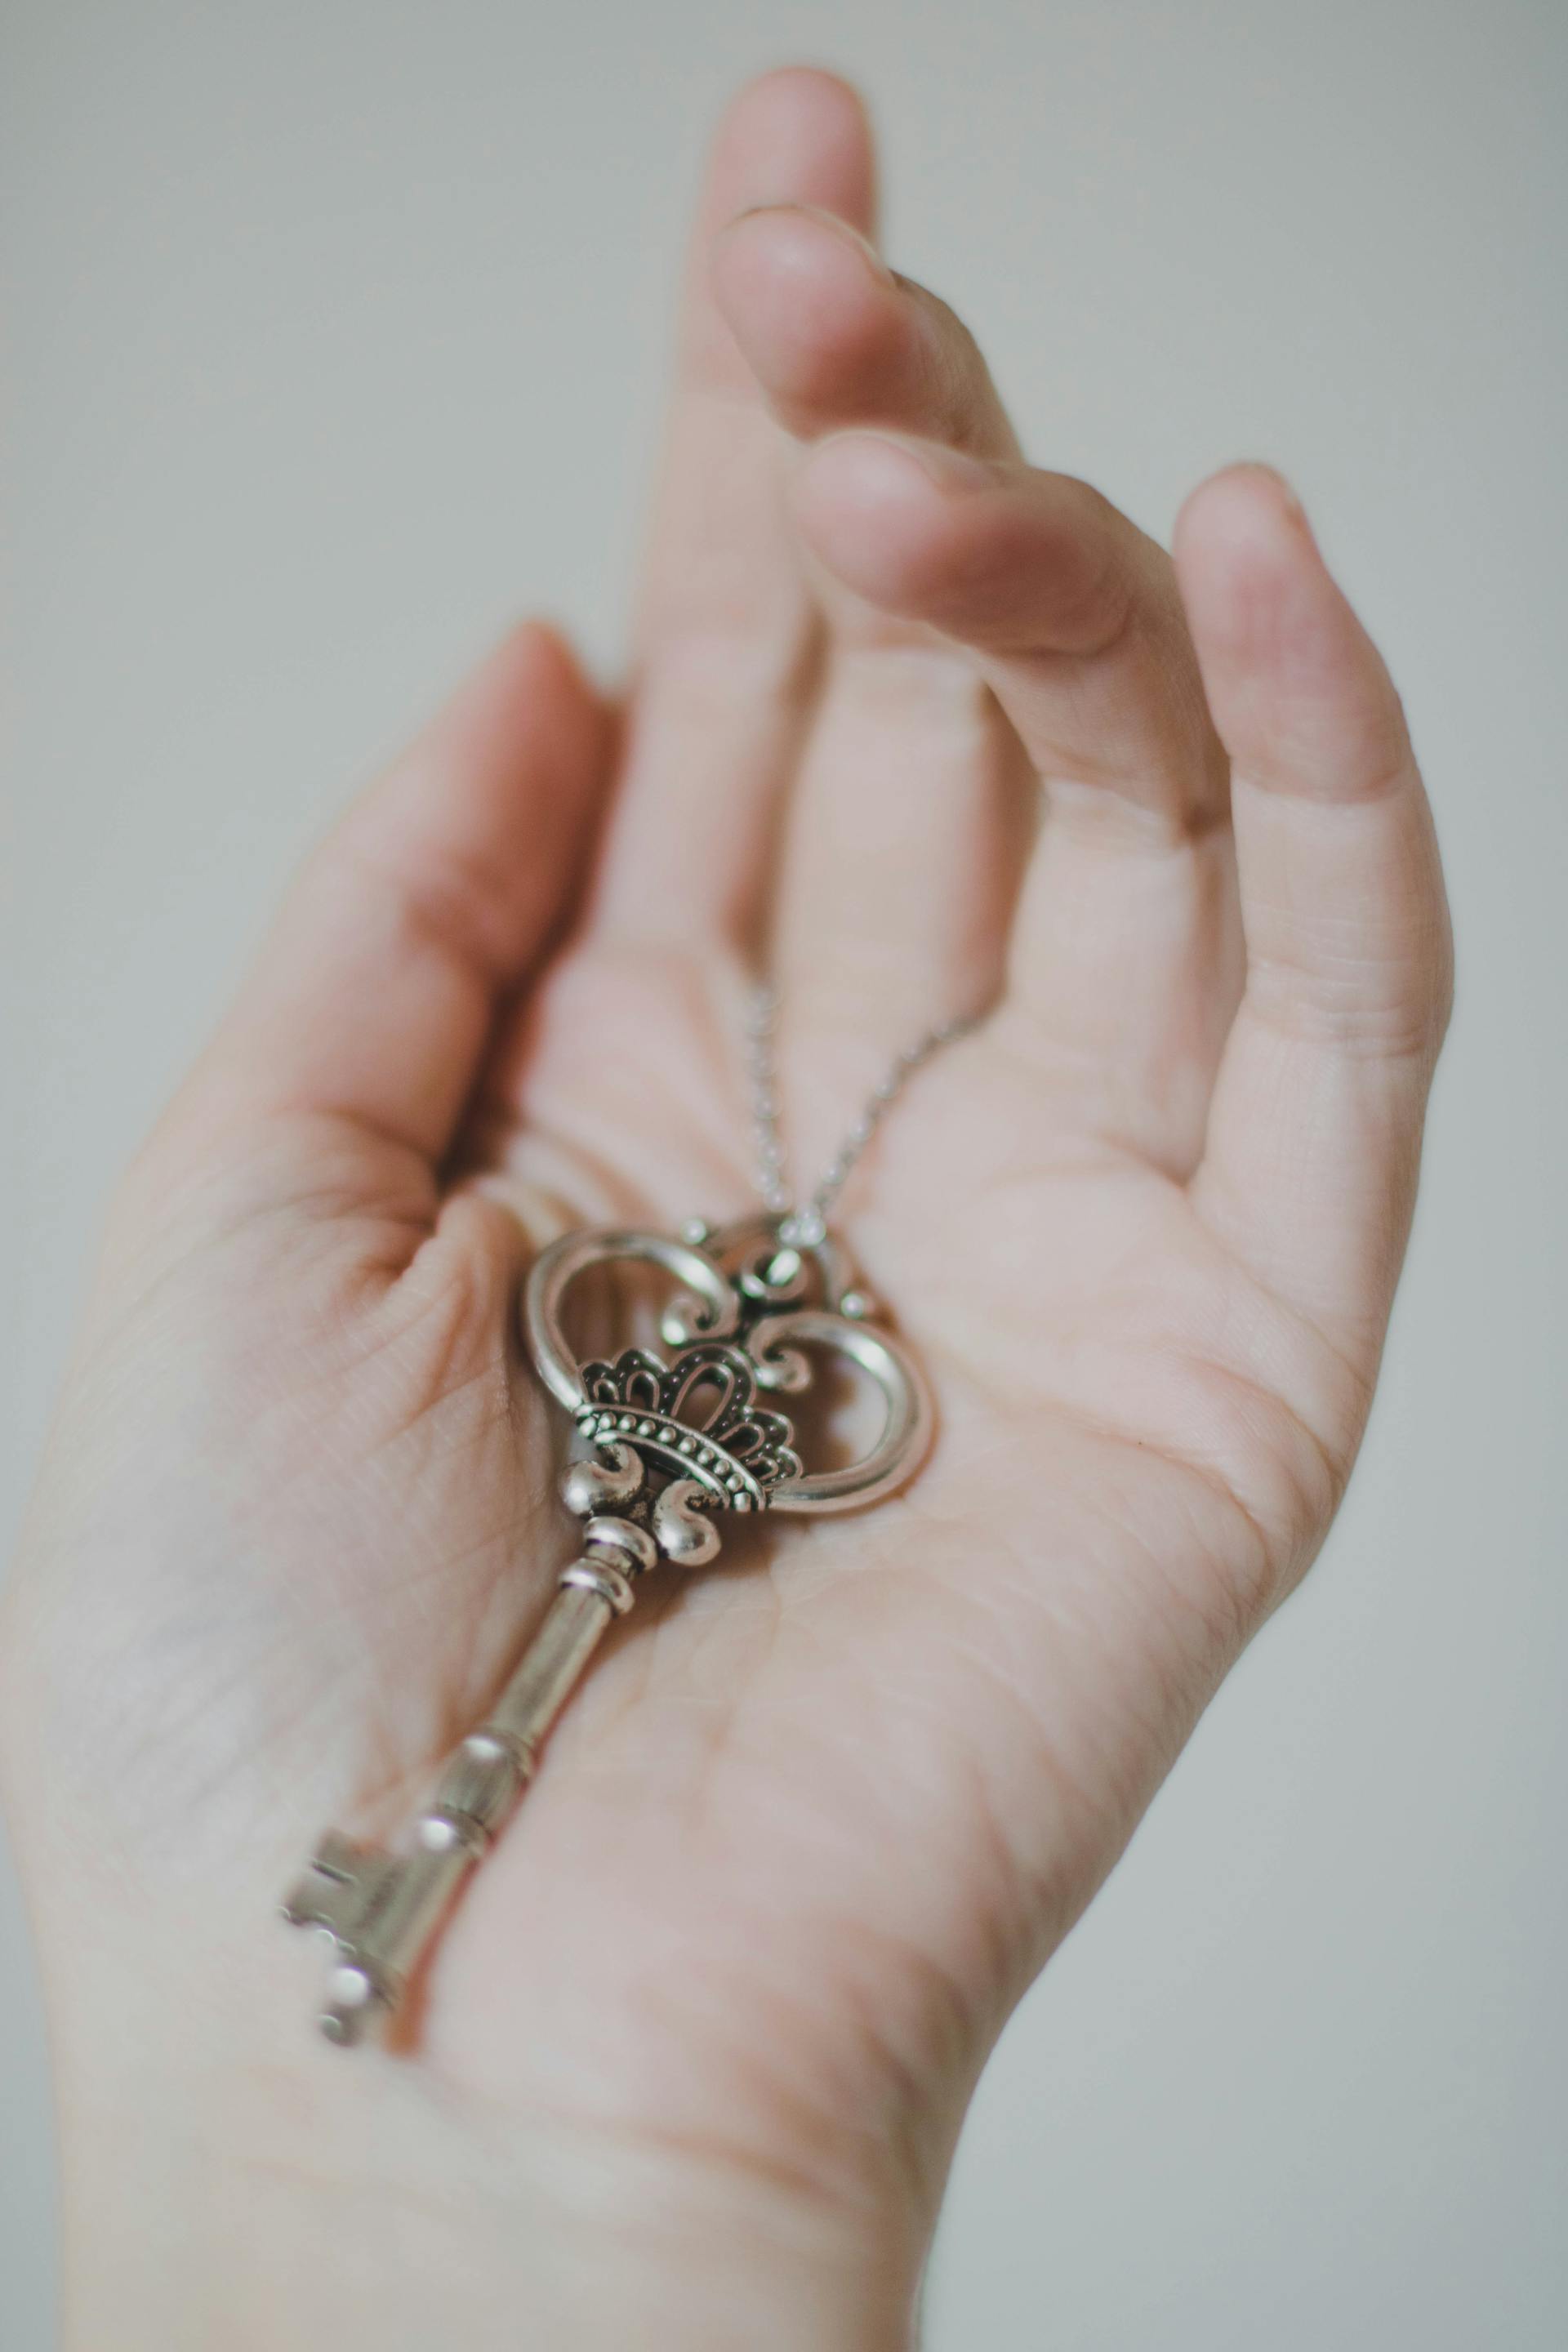 Une personne tenant une clé squelette de couleur argentée | Source : Pexels